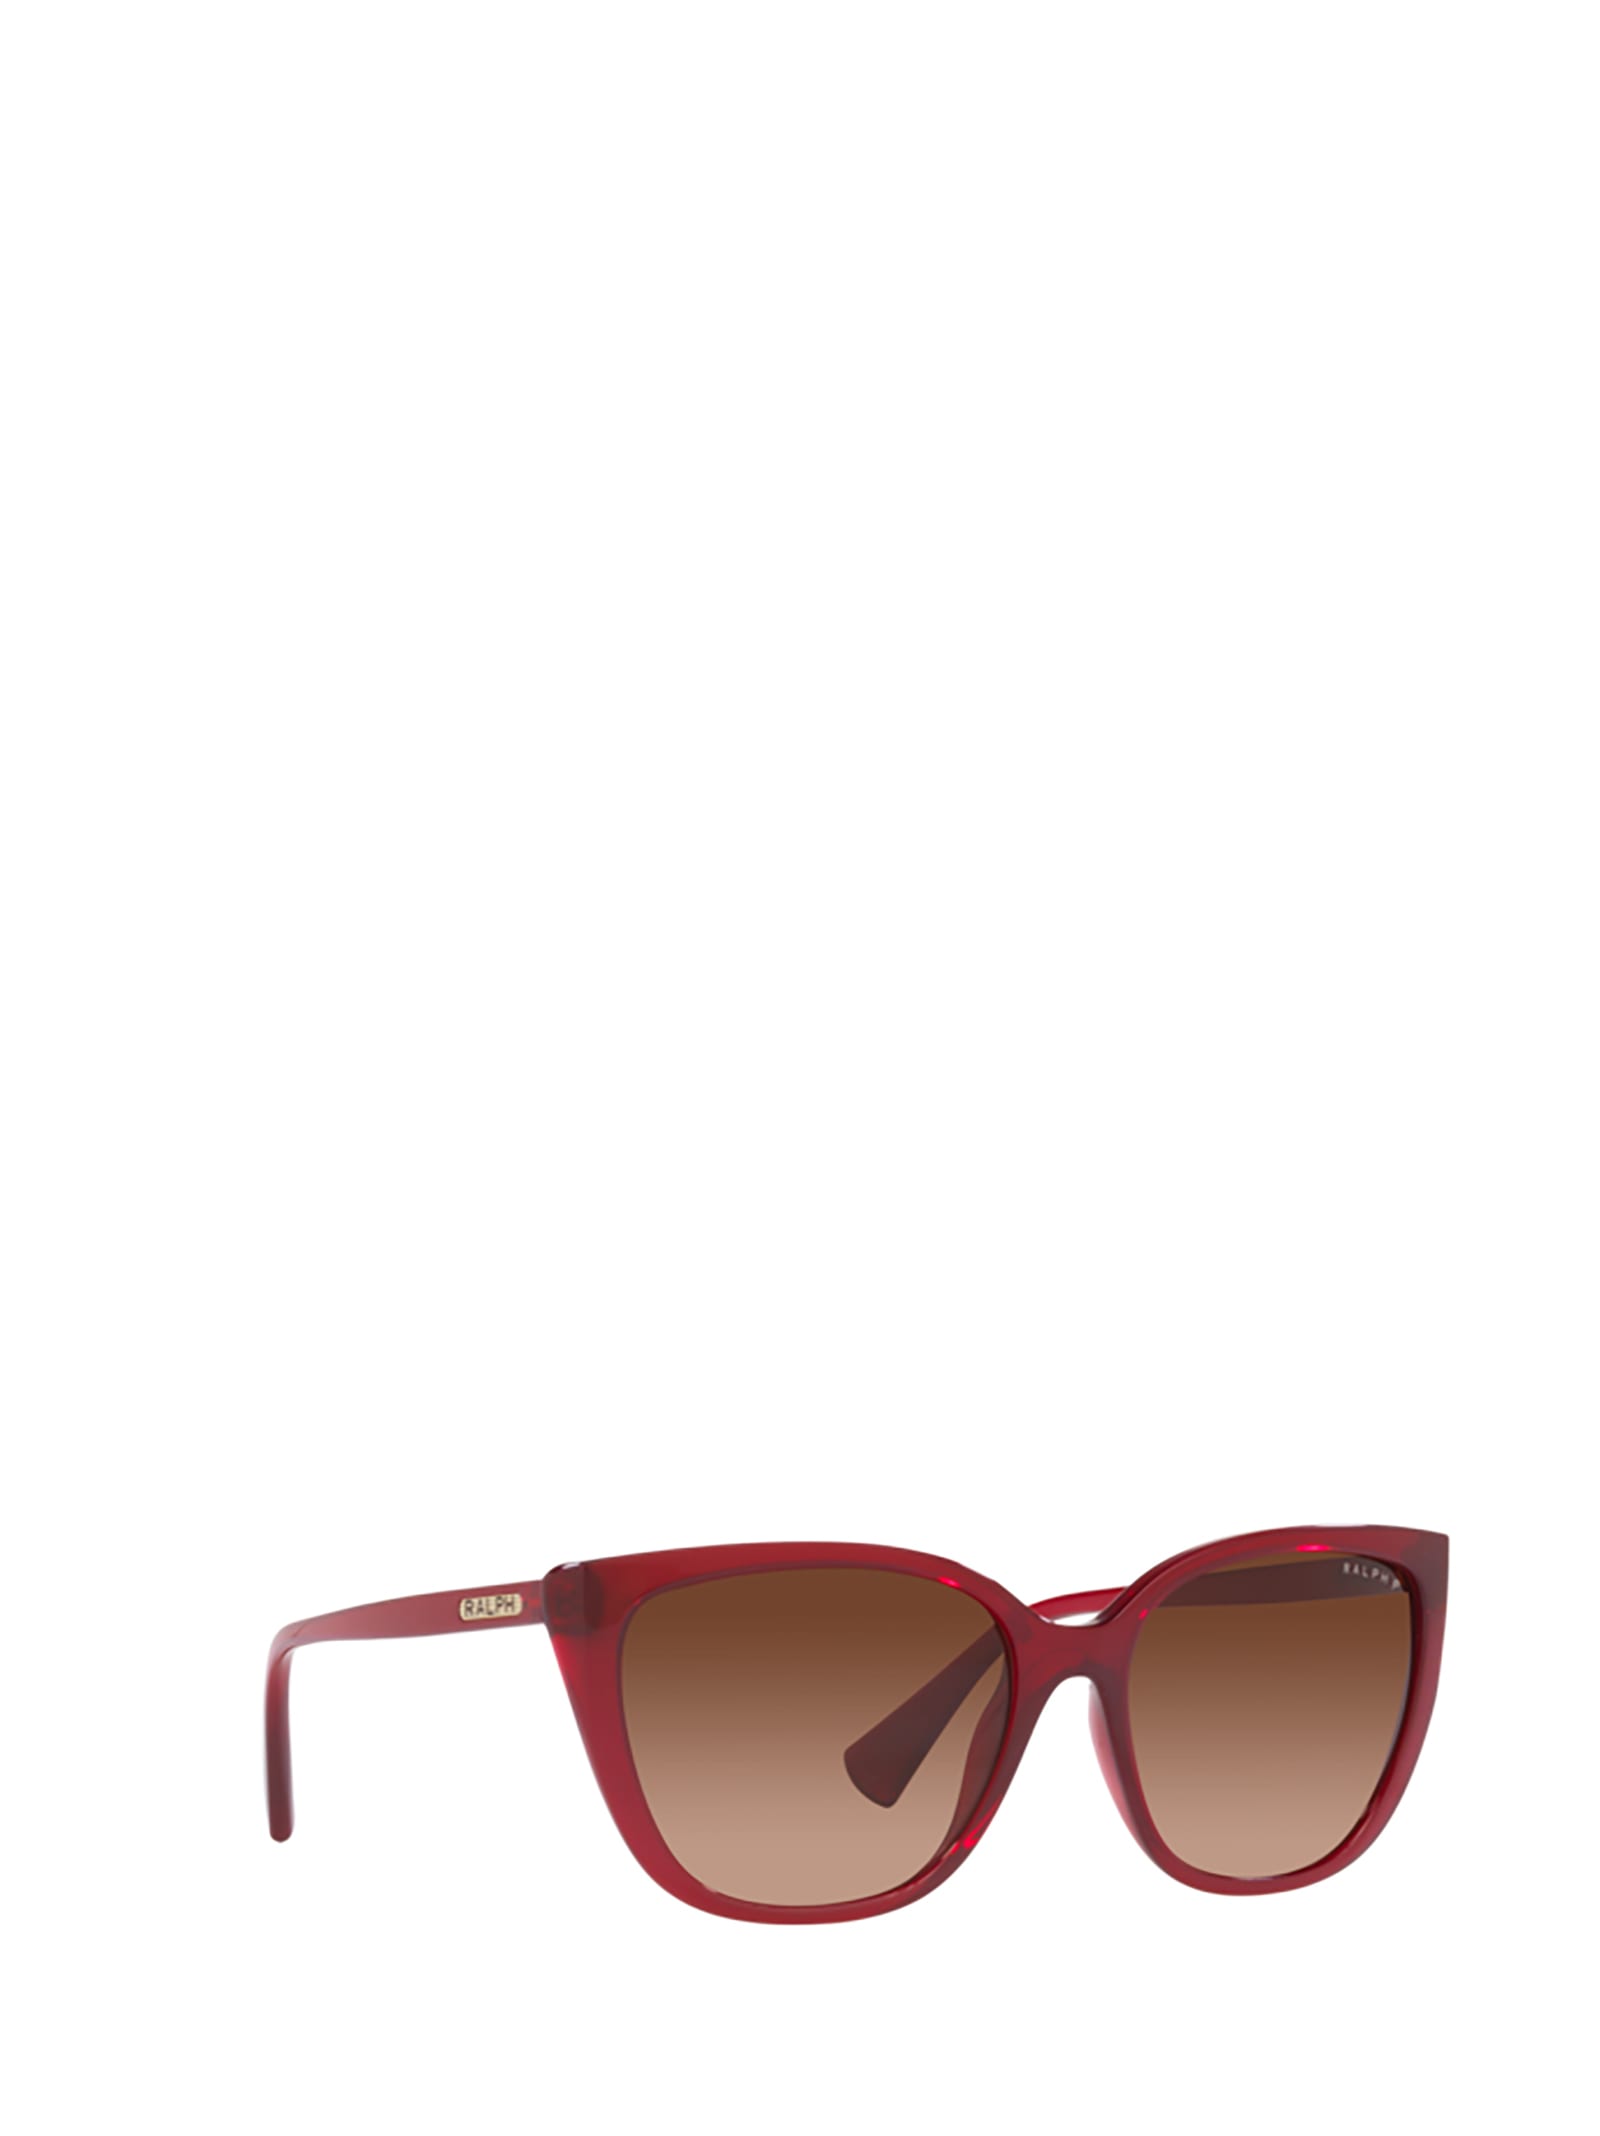 Shop Polo Ralph Lauren Ra5274 Transparent Bordeaux Sunglasses